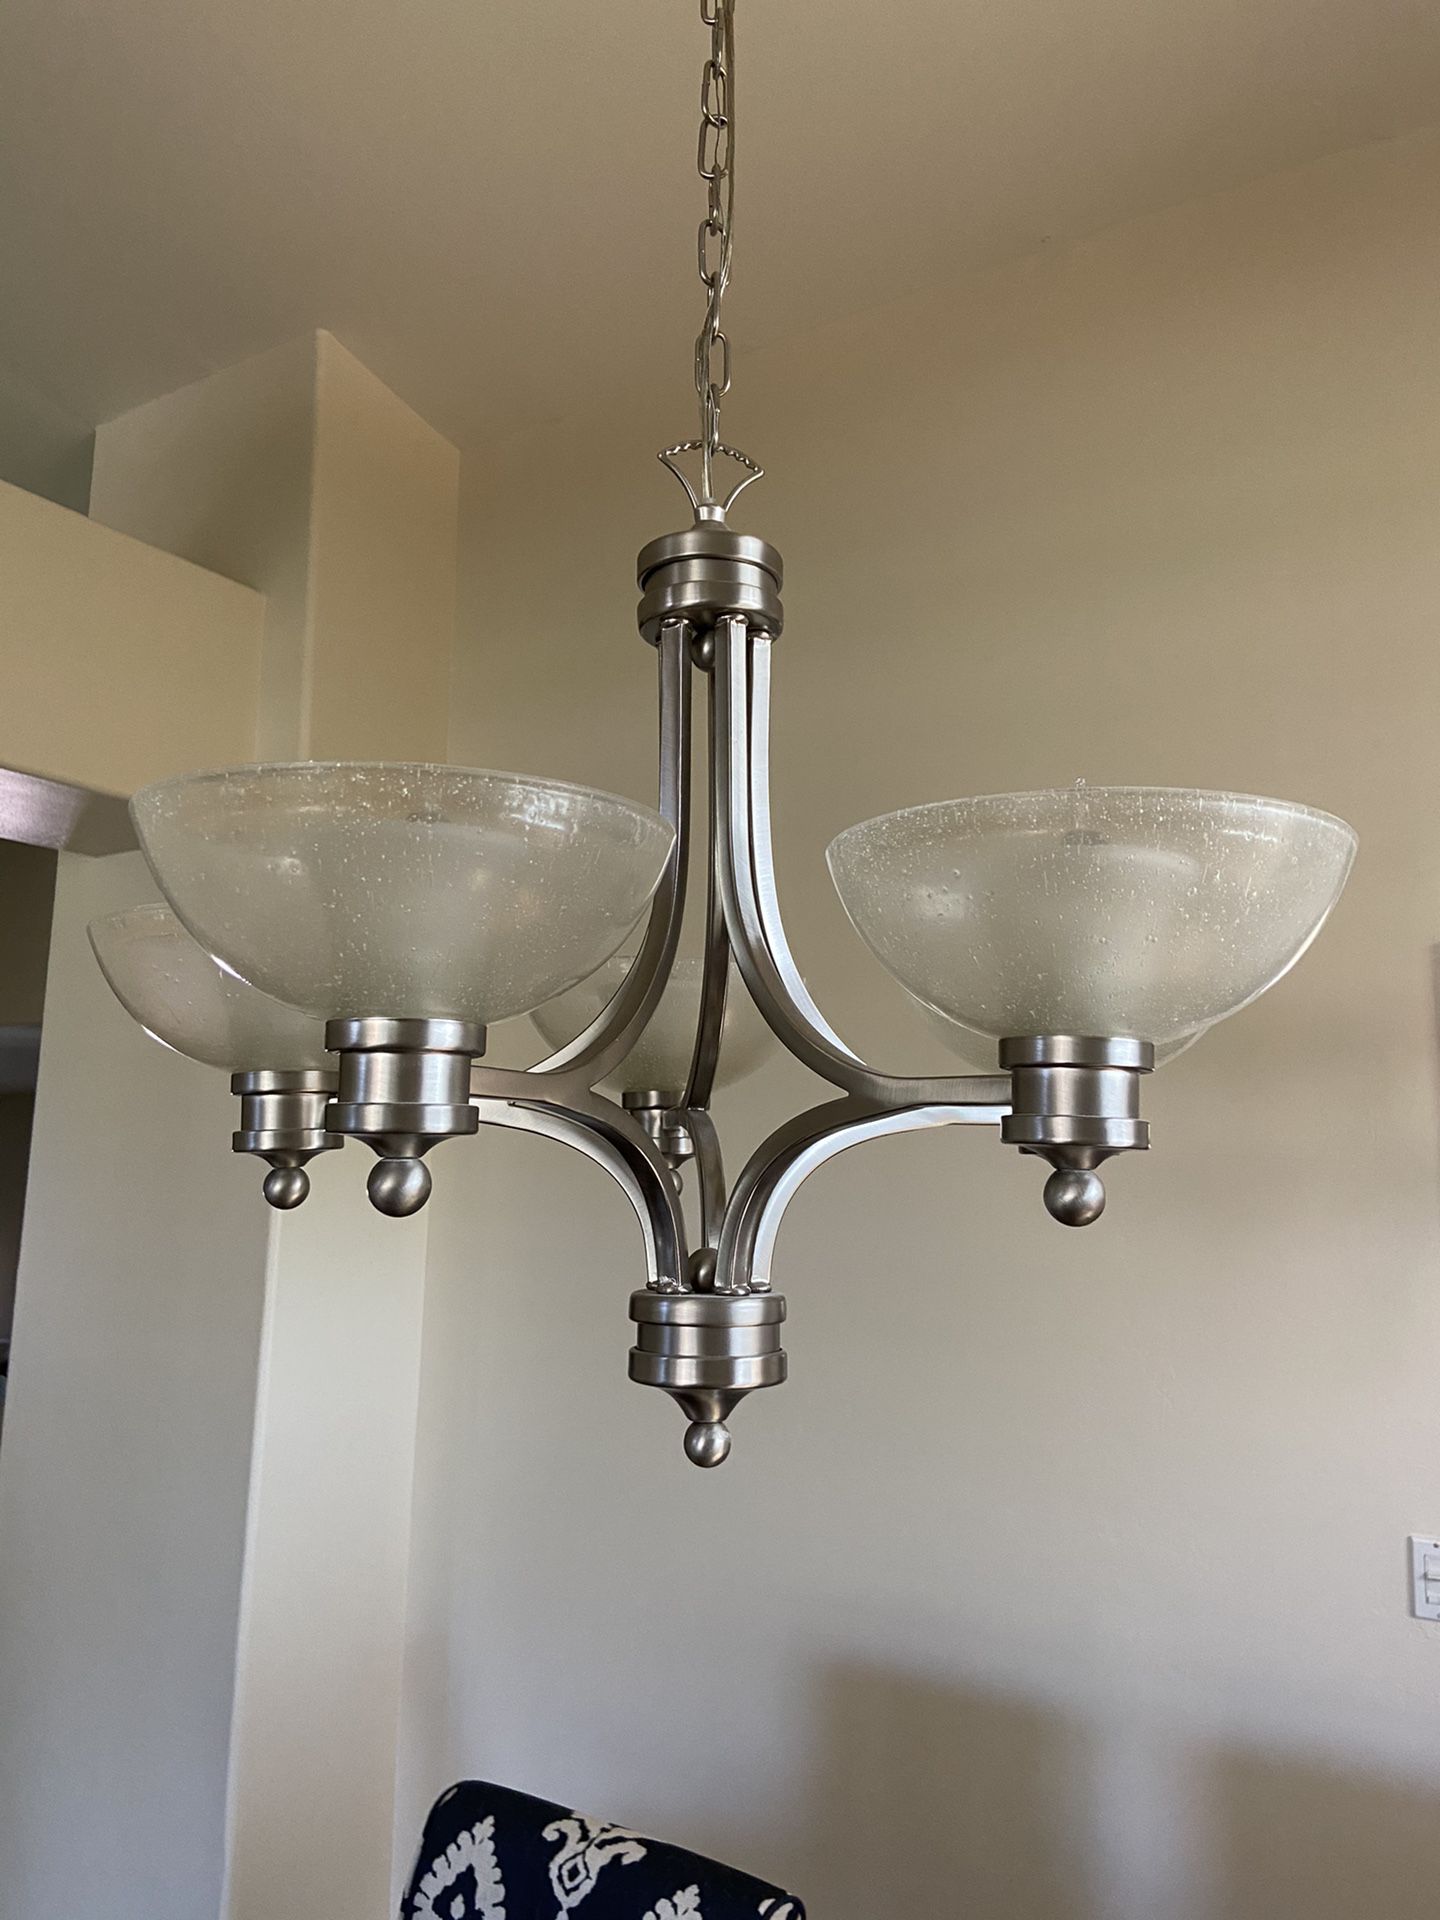 Brushed nickel chandelier light fixture